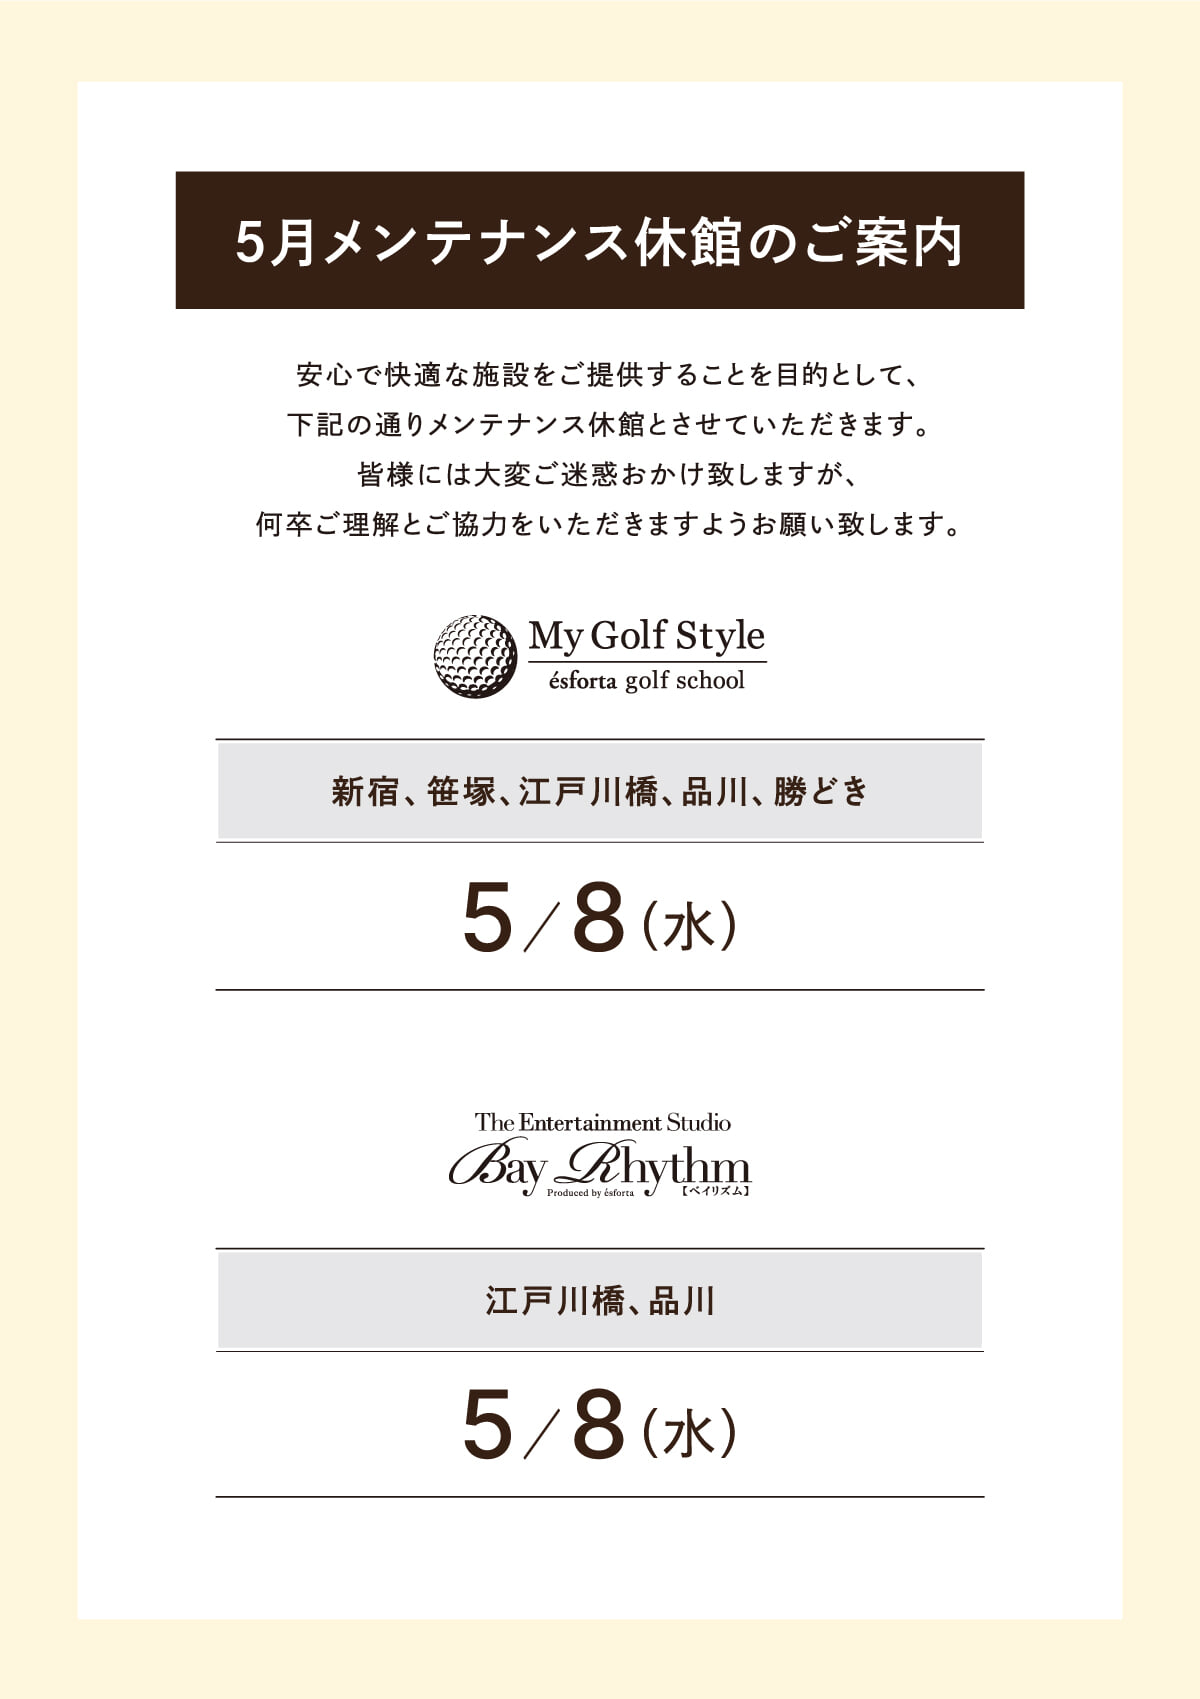 http://www.esforta.co.jp/golf/img/schooloffday202405.jpg